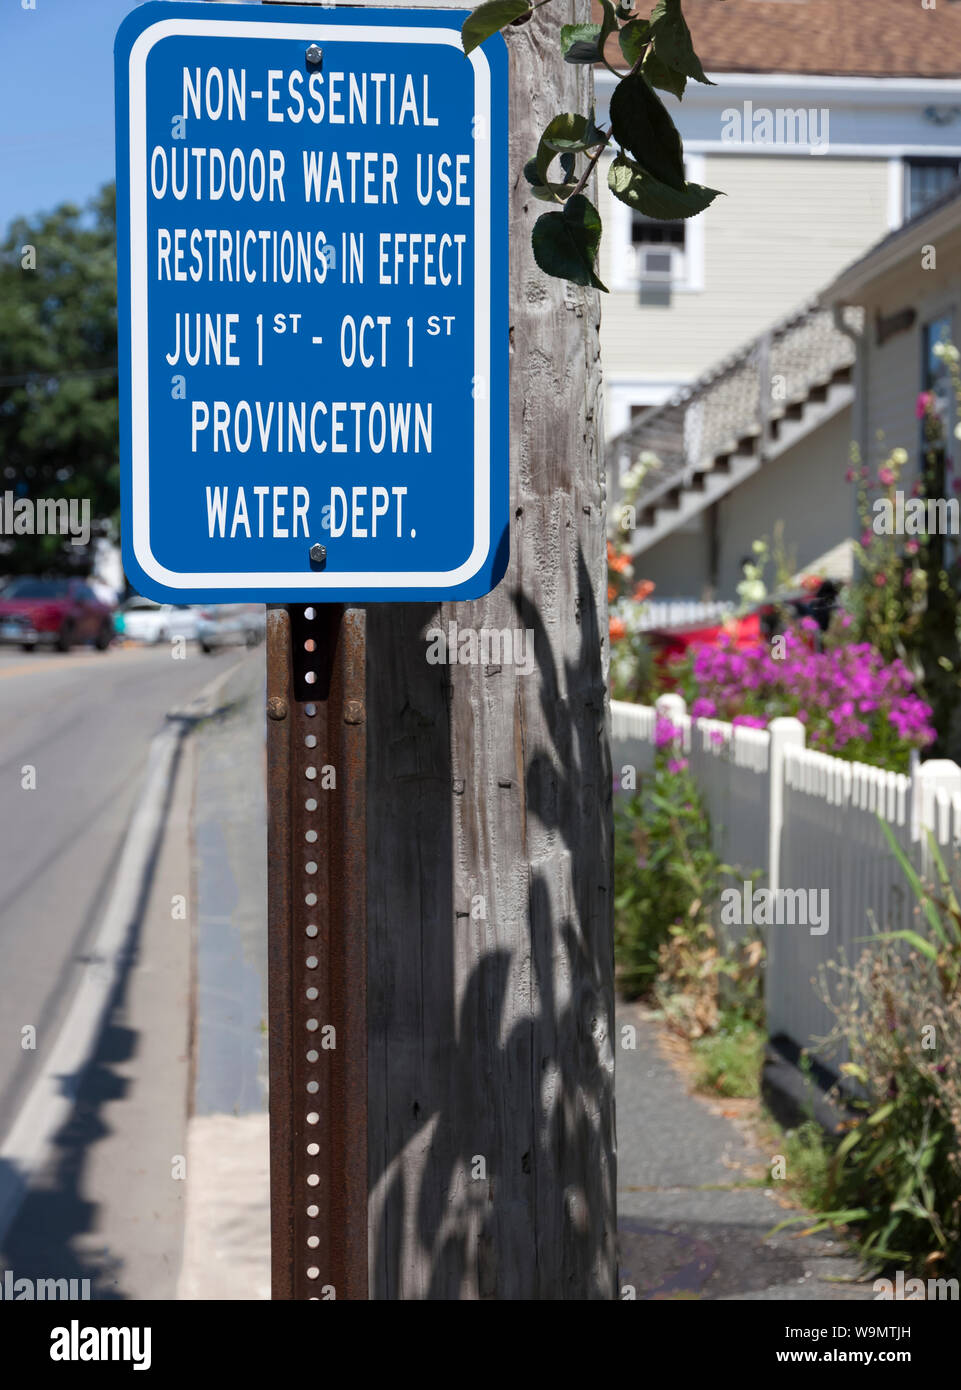 Cartel que anuncia restricción de agua al aire libre. Foto de stock